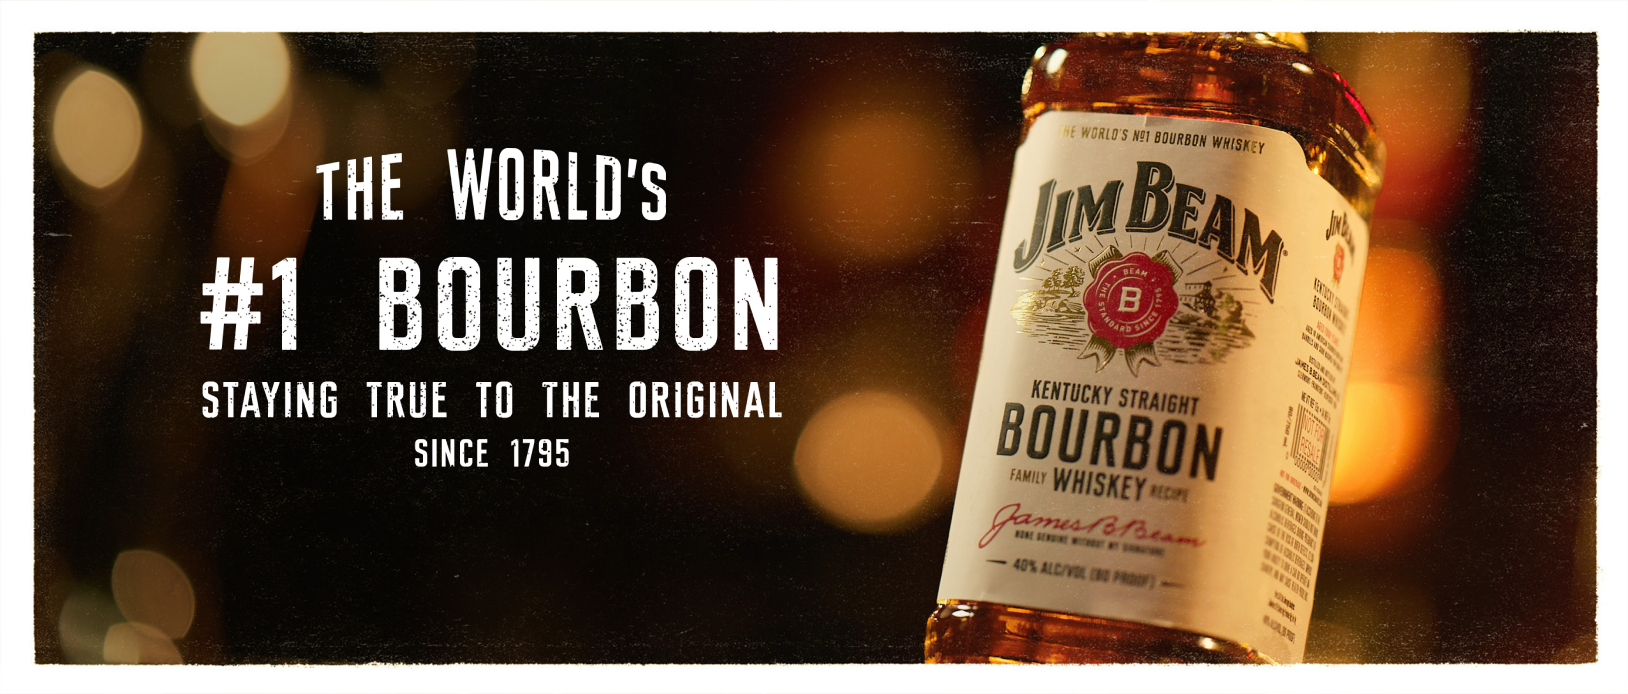 Our bourbon